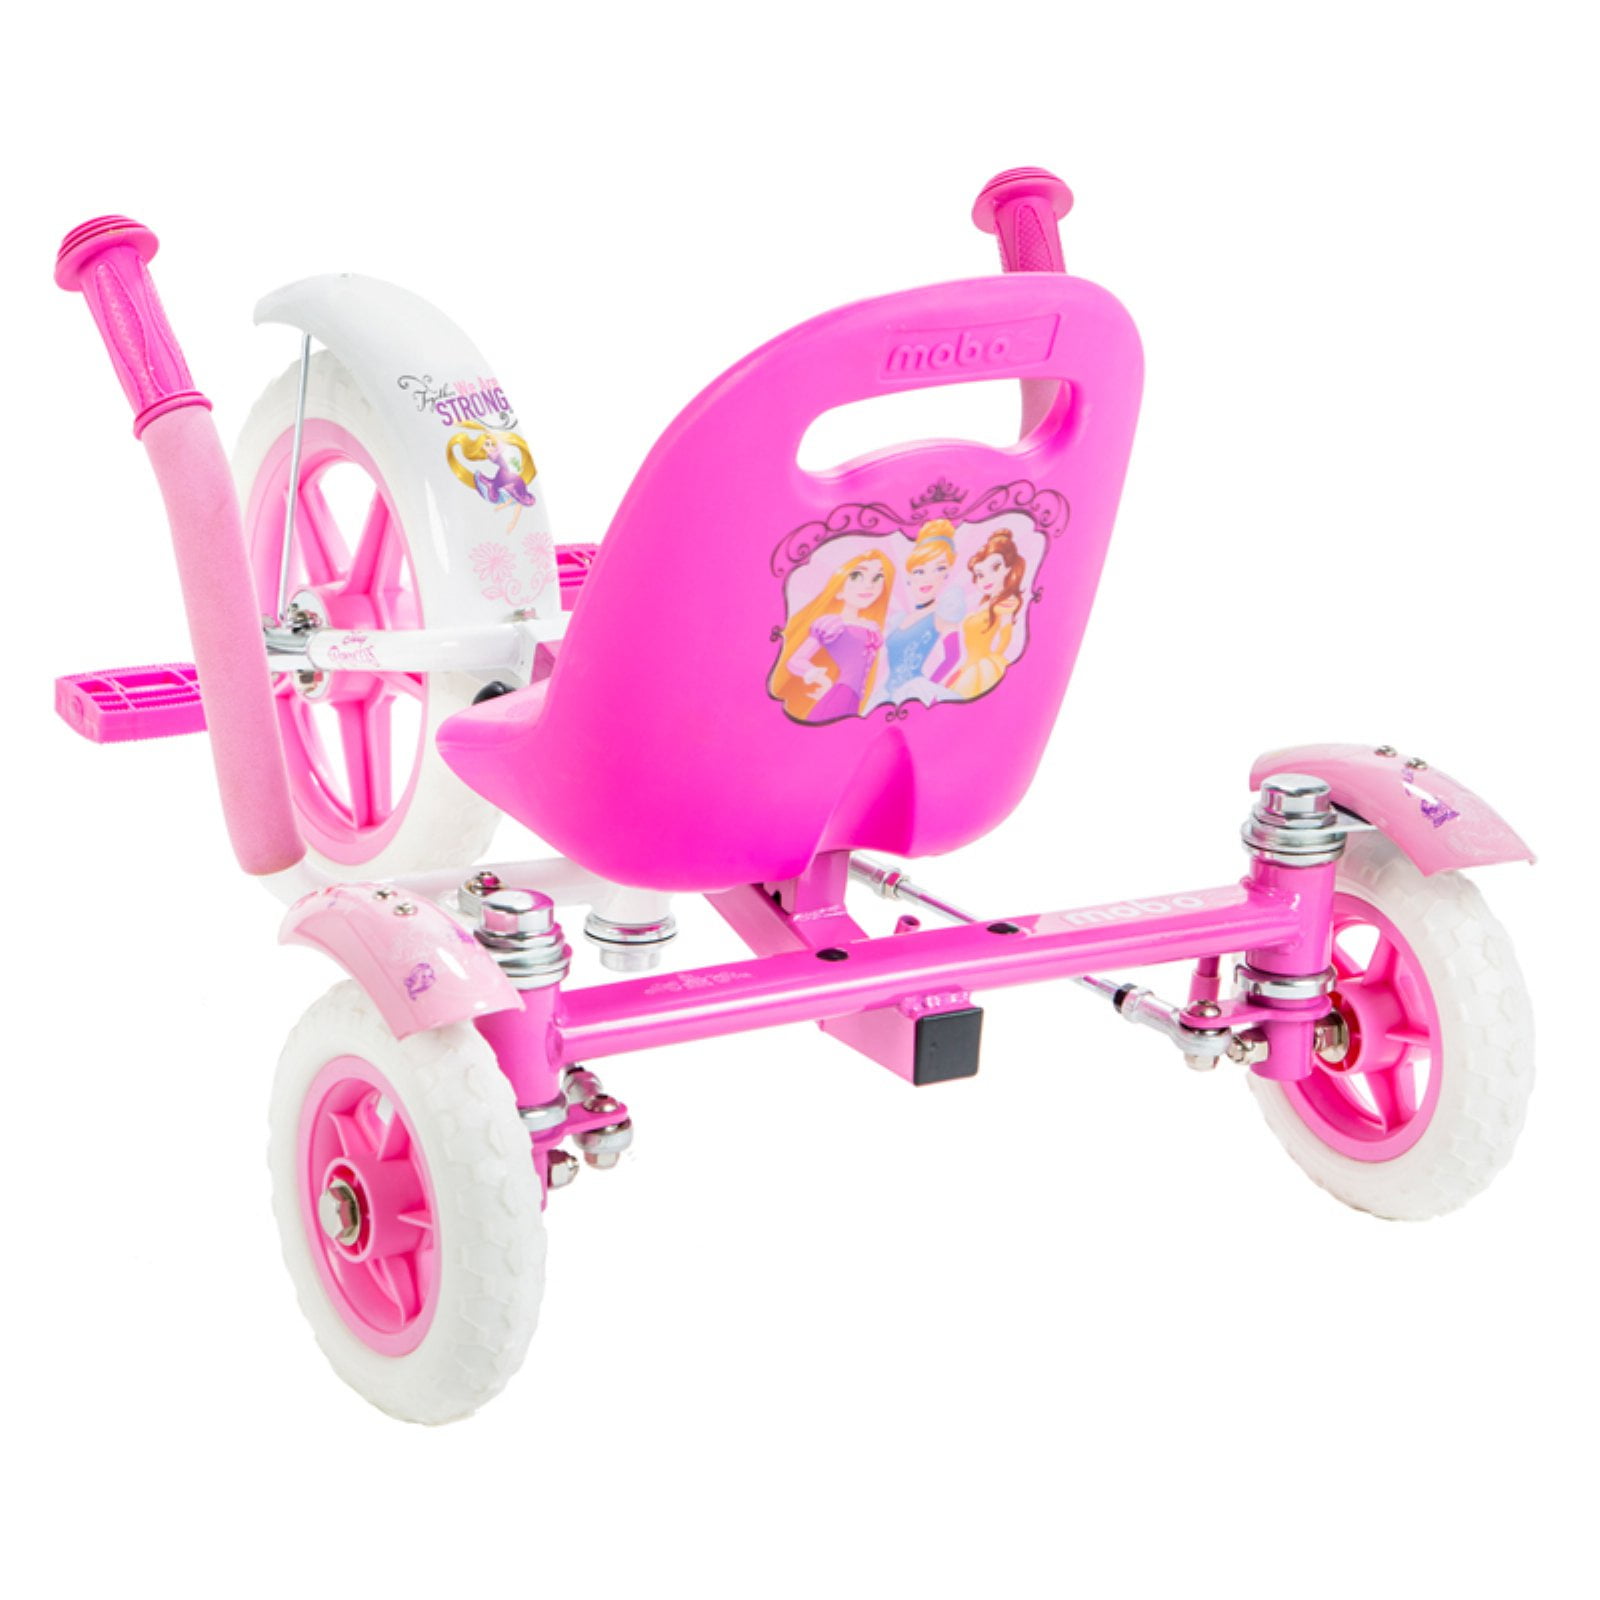 Mobo Tot Disney Princess Trike Kids Girls Ride On Toy